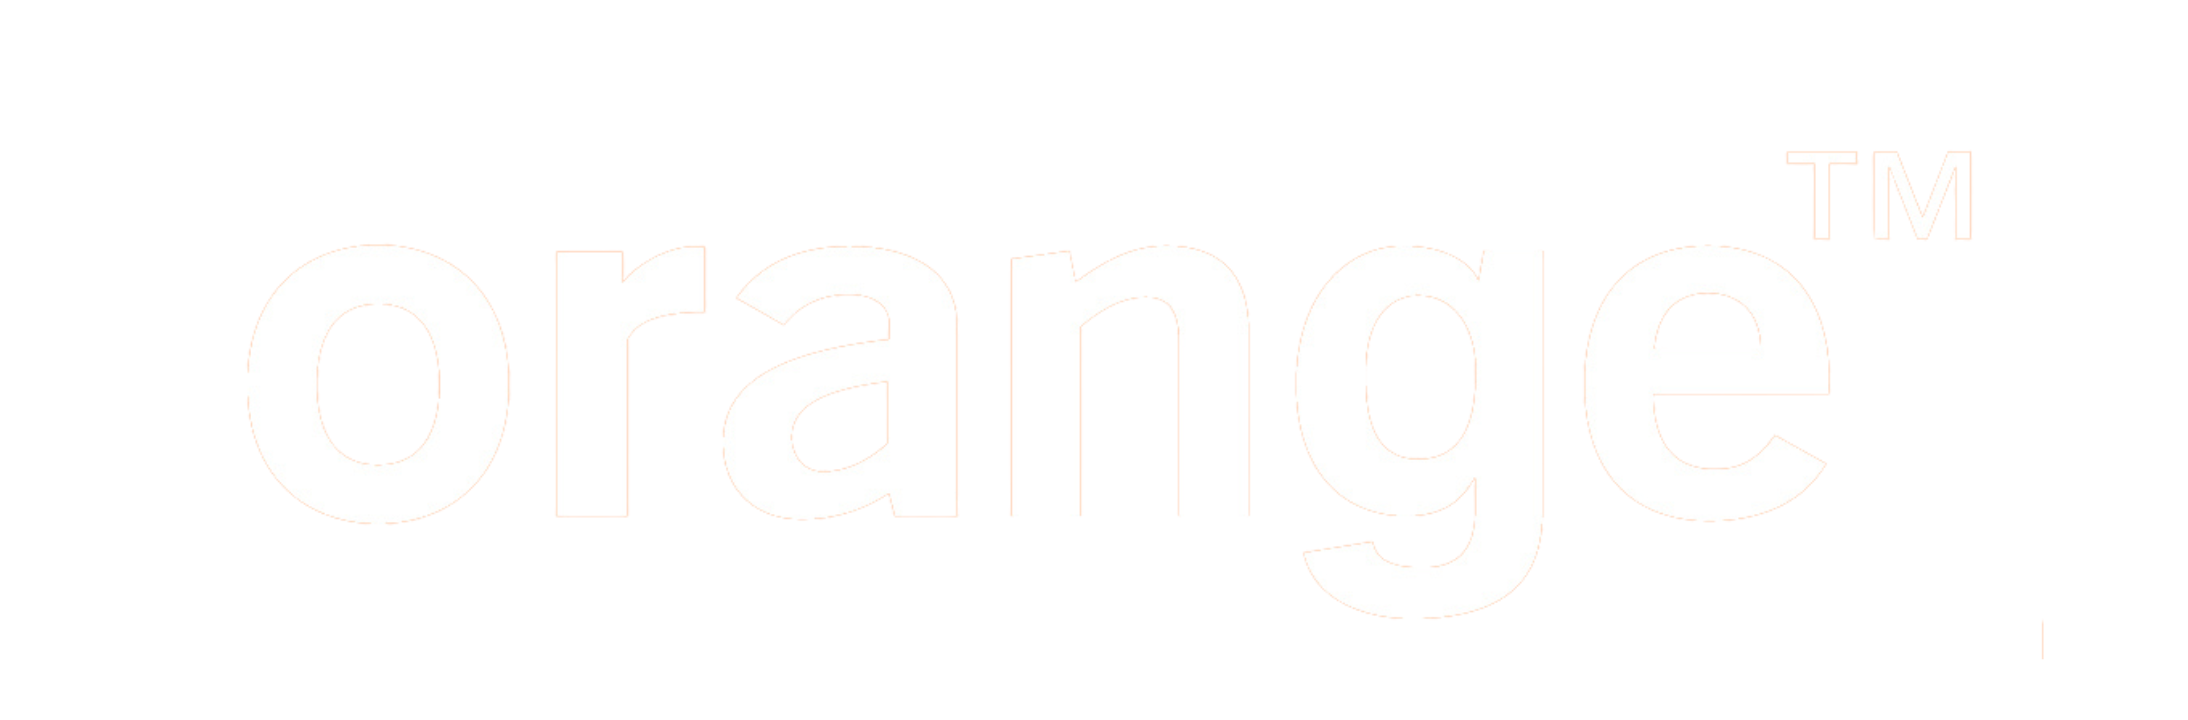 Logo Orange™ avec texte blanc sur fond noir.